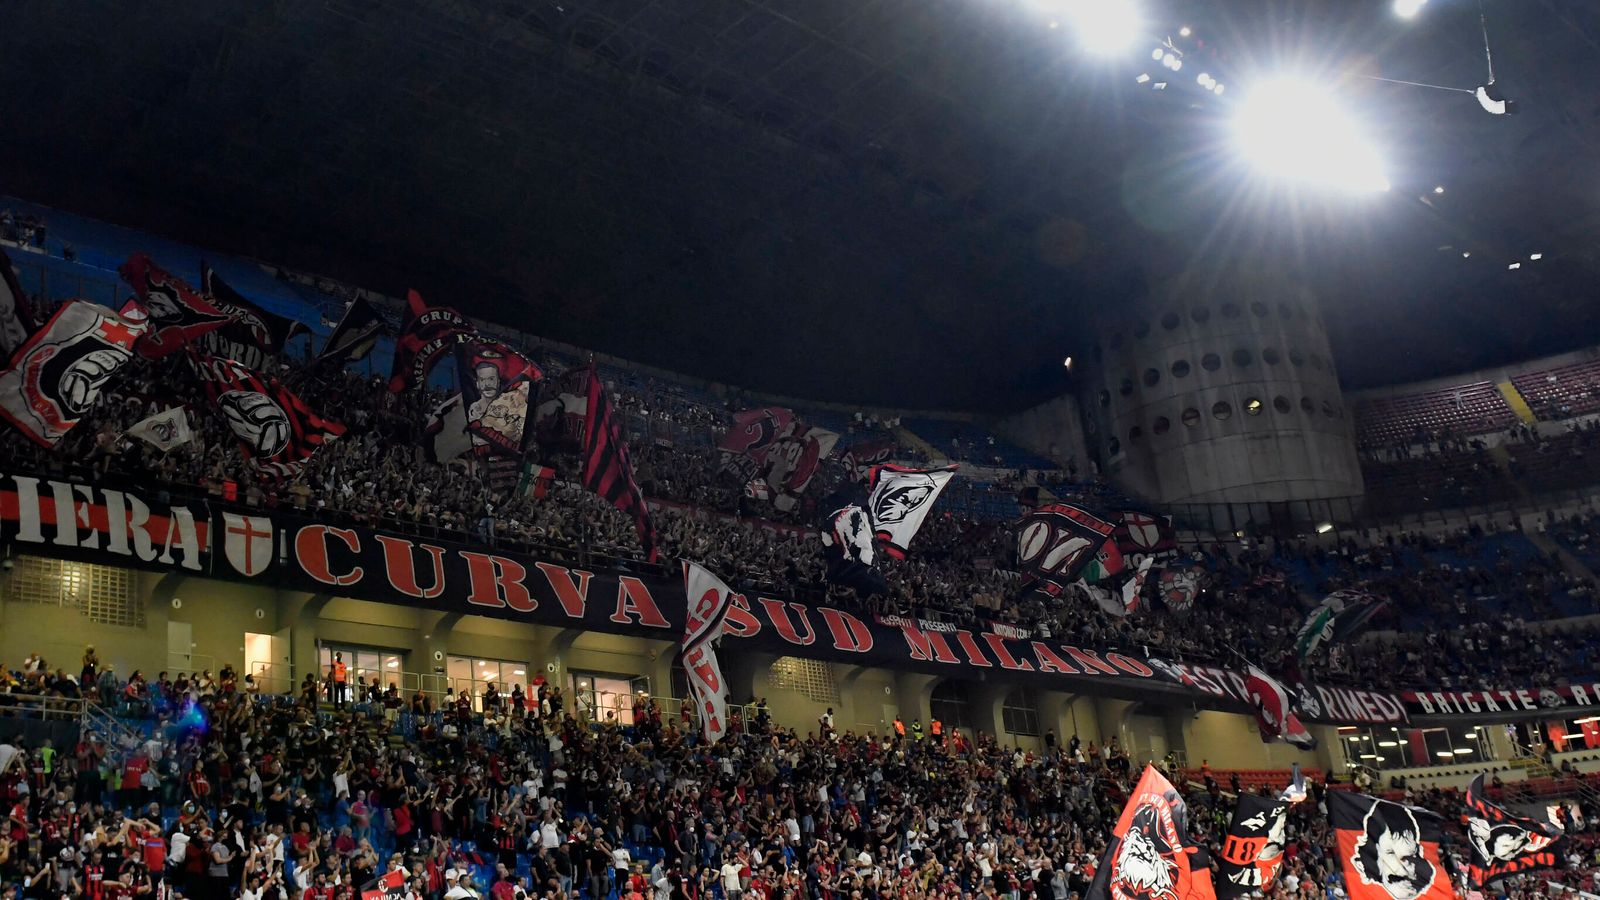 AC Mailand News Verantwortliche passen Ticketpreise nach Fan-Kritik an Fußball News Sky Sport